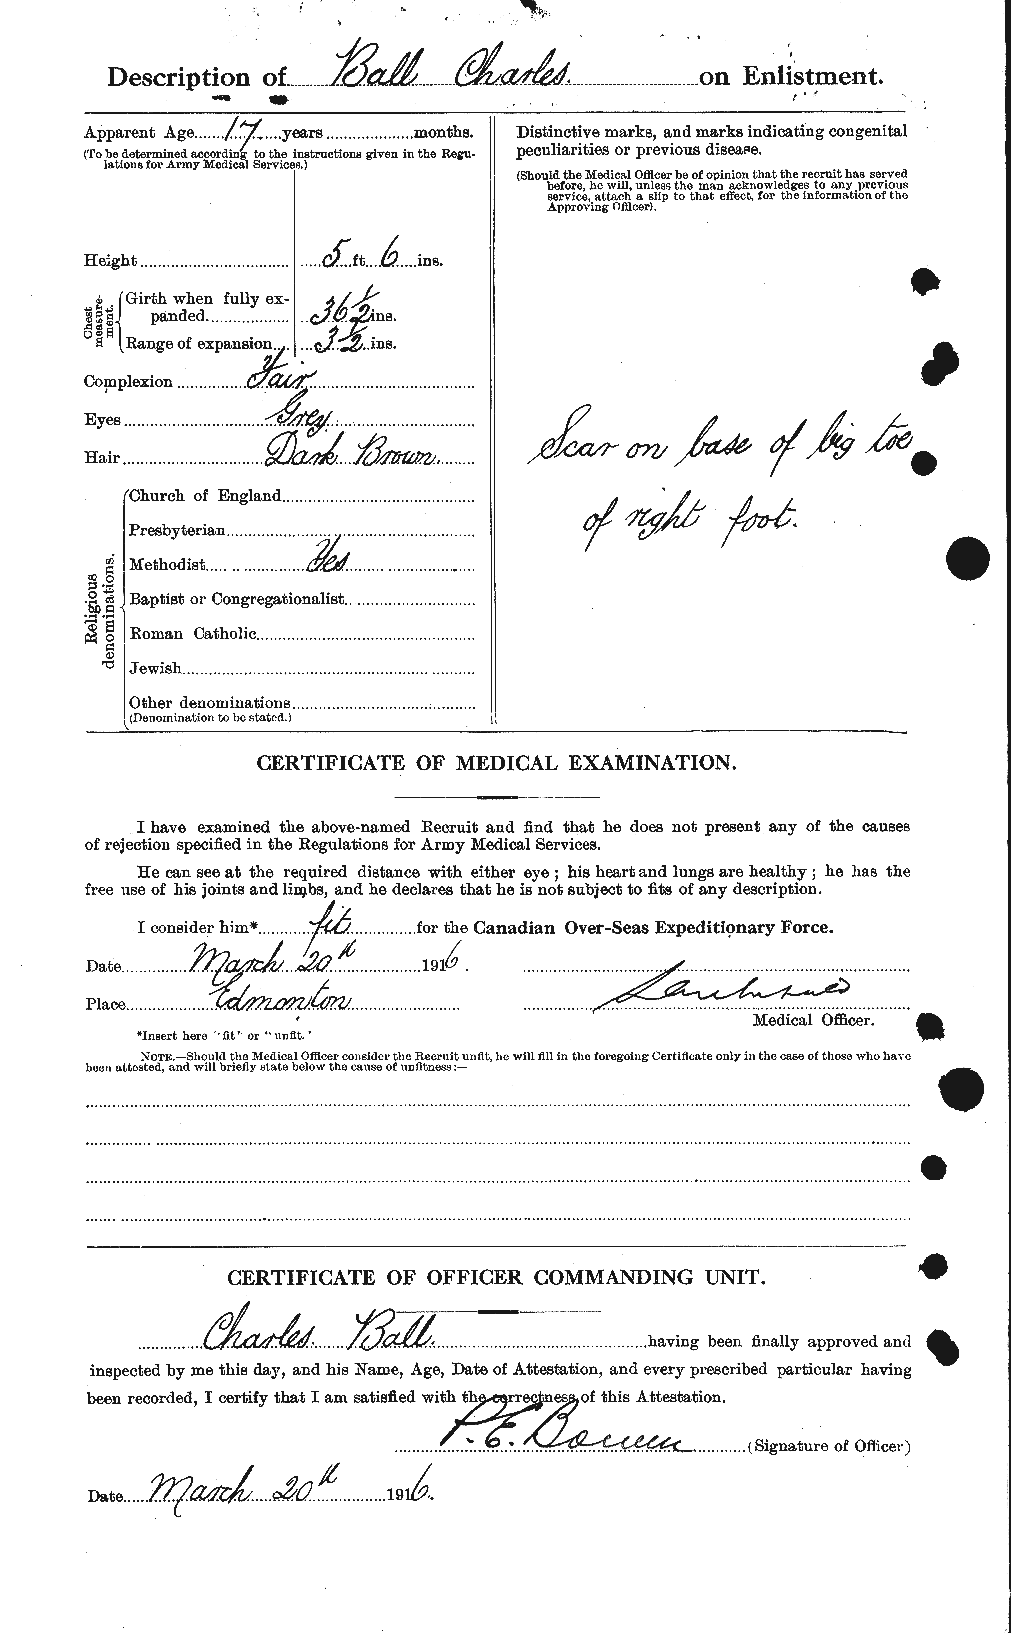 Dossiers du Personnel de la Première Guerre mondiale - CEC 225863b